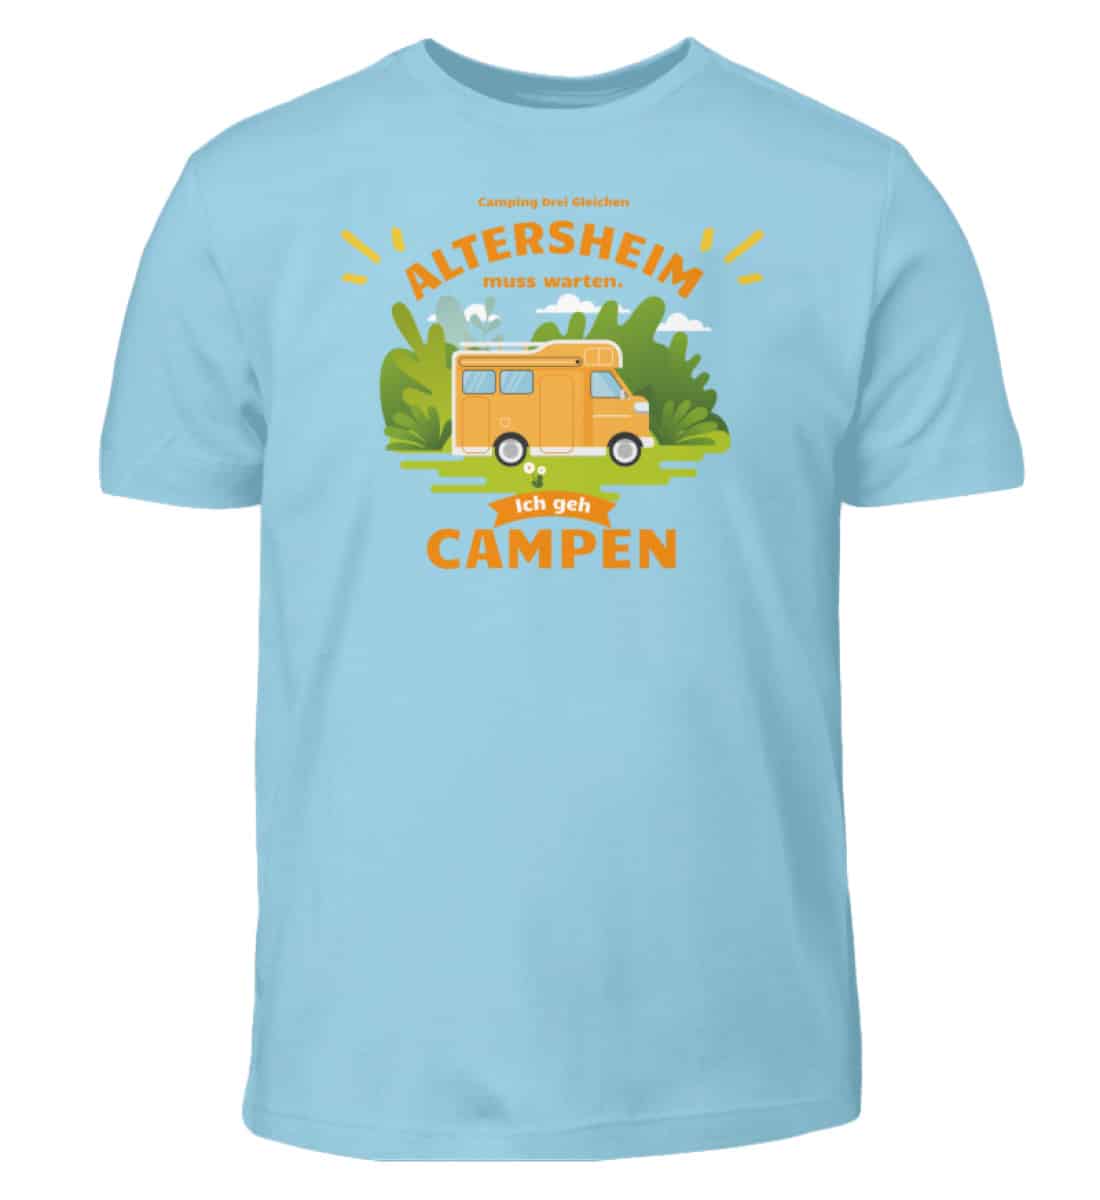 Altersheim muss warten -Campen Wohnmobil - Kinder T-Shirt-674